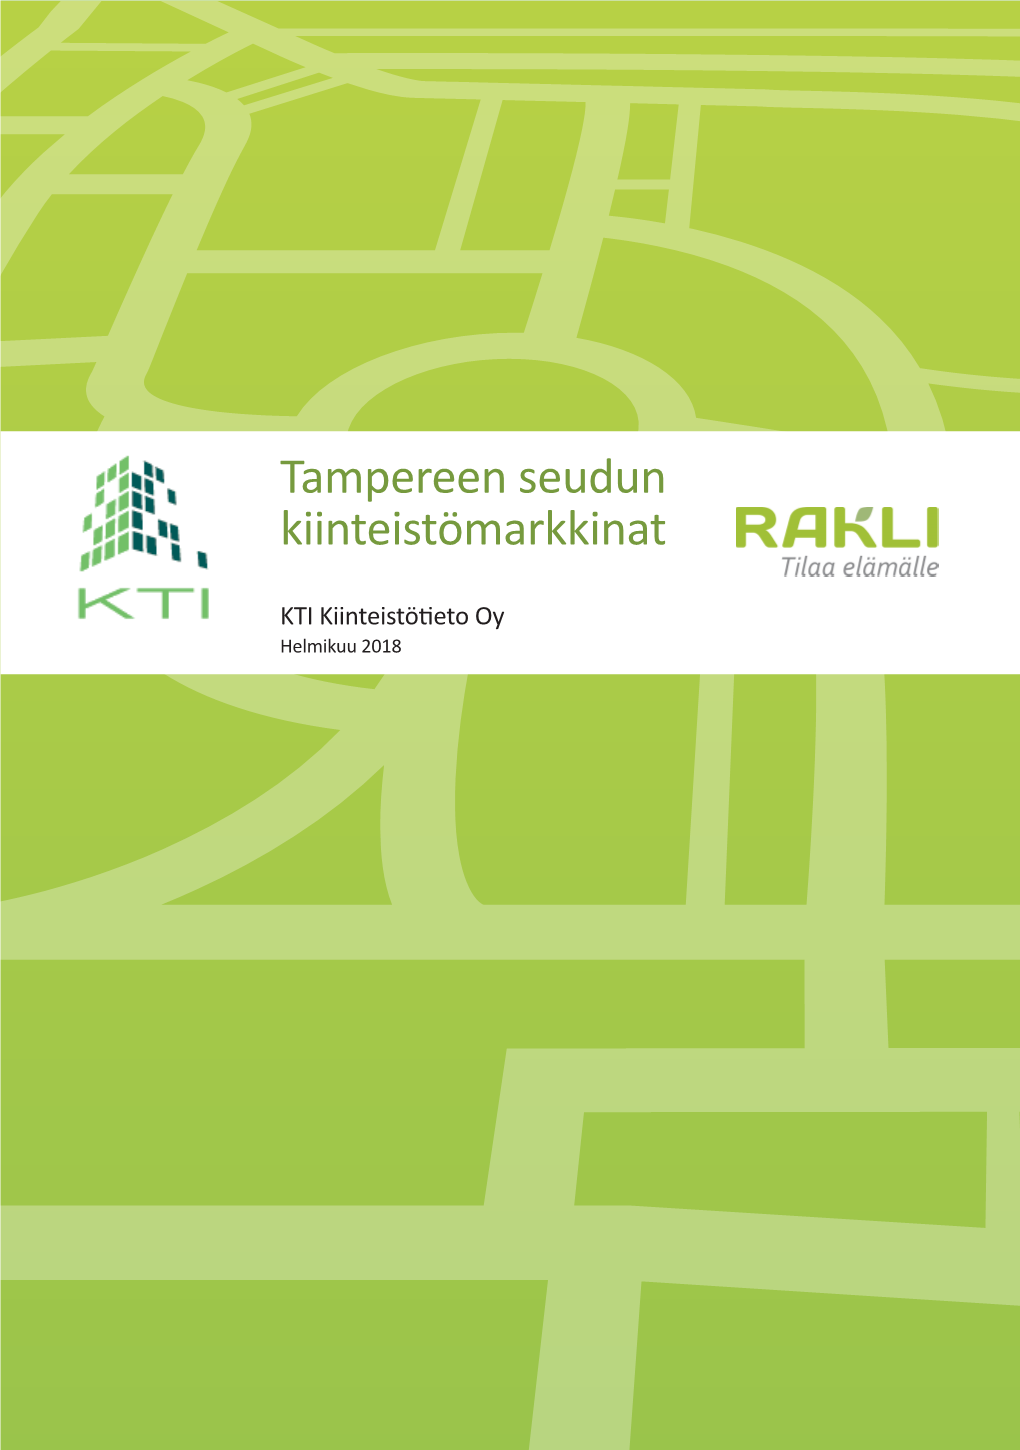 Tampereen Seudun Kiinteistömarkkinat